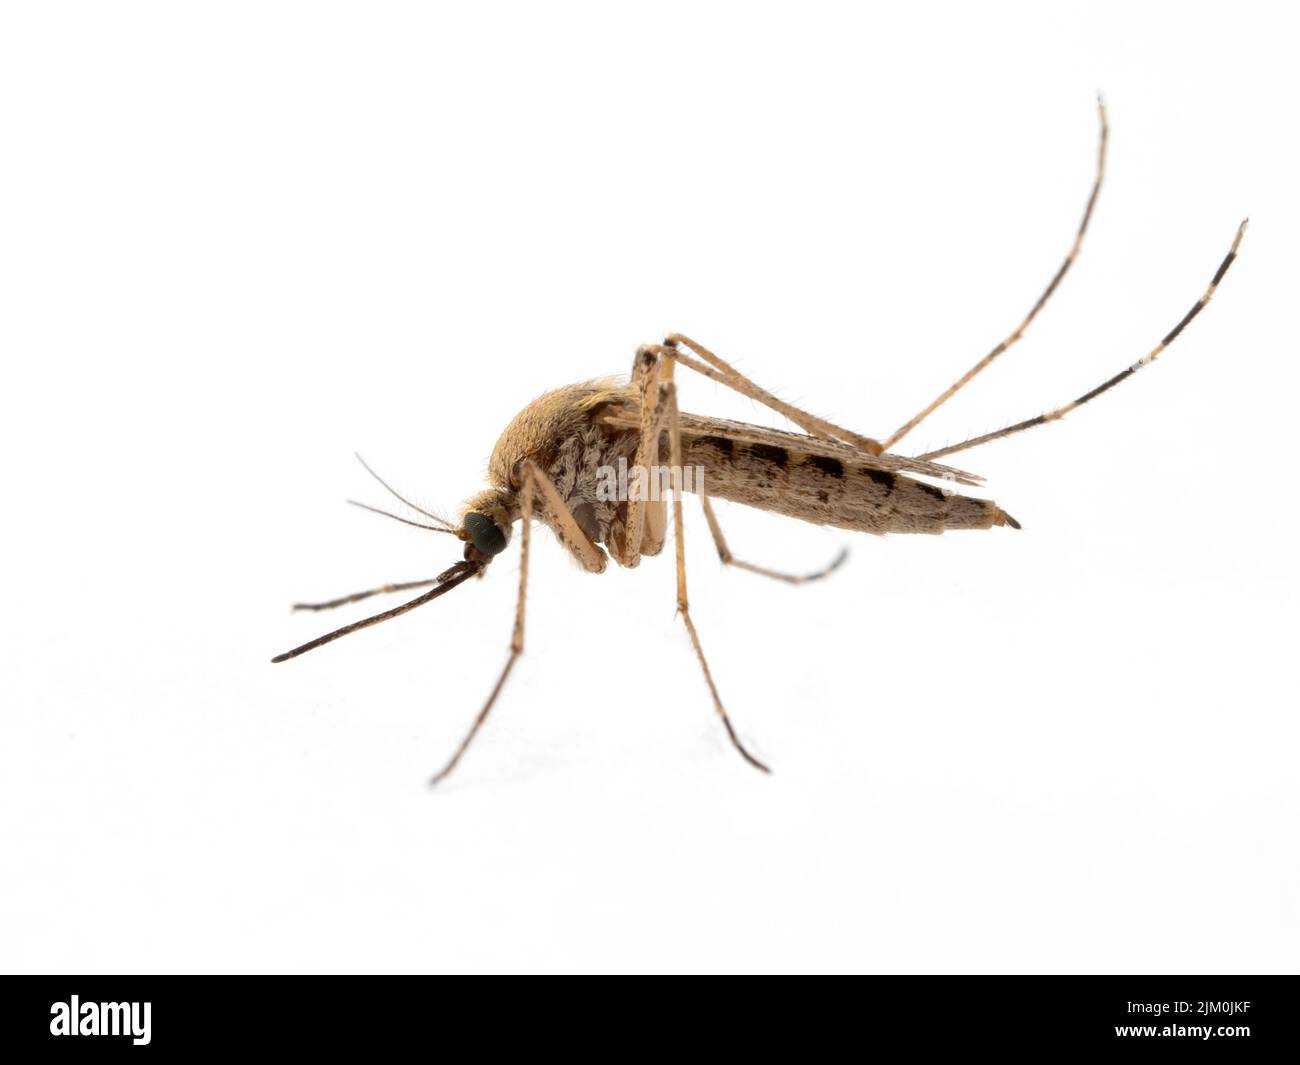 Vue latérale d'un moustique côtier femelle, Aedes dorsalis, isolé sur blanc. Ladner, Delta, Colombie-Britannique, Canada Banque D'Images